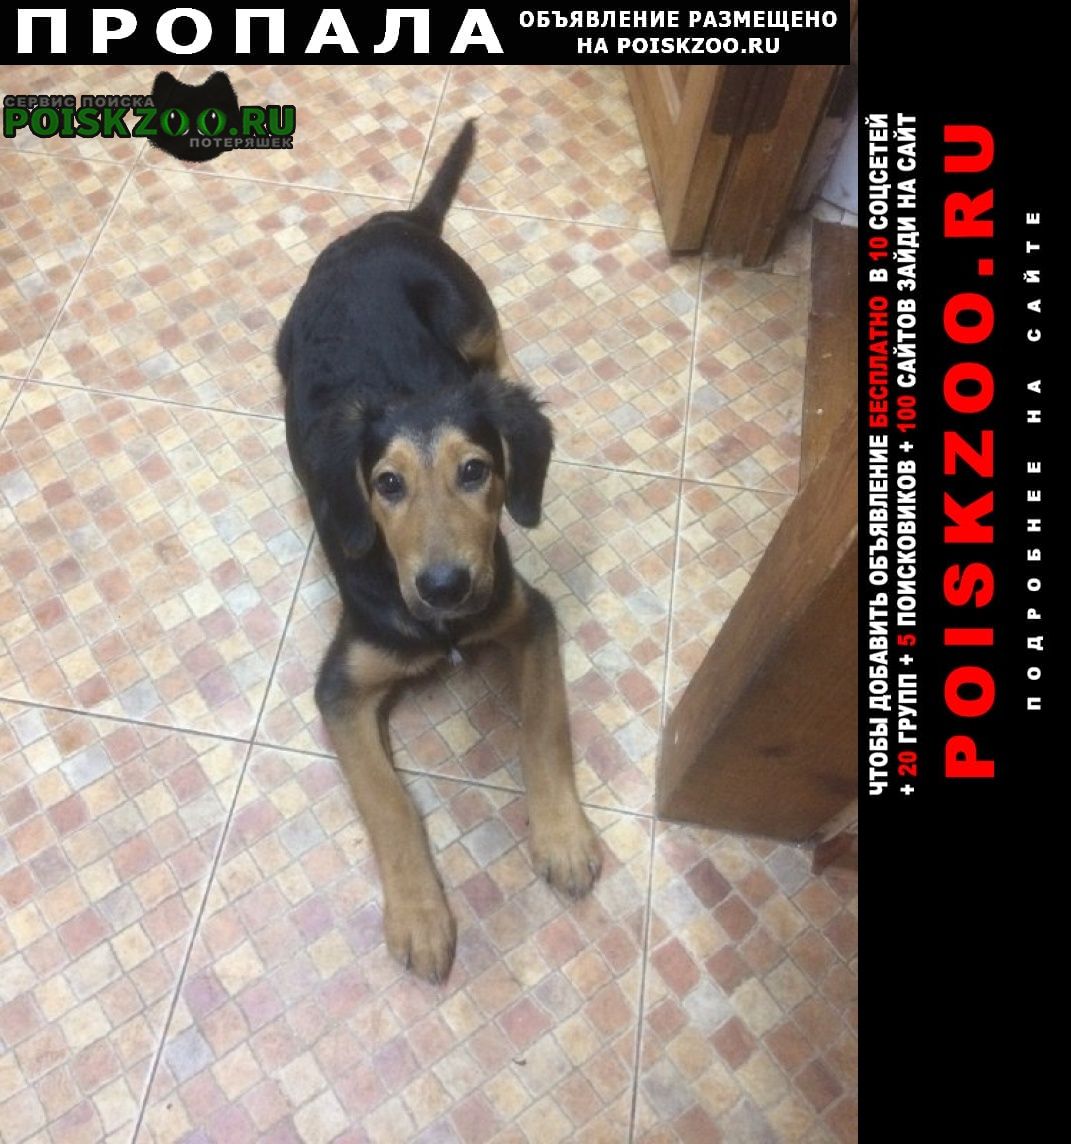 Пропала собака кобель молодой крупный пёс 8 месяцев Ростов-на-Дону